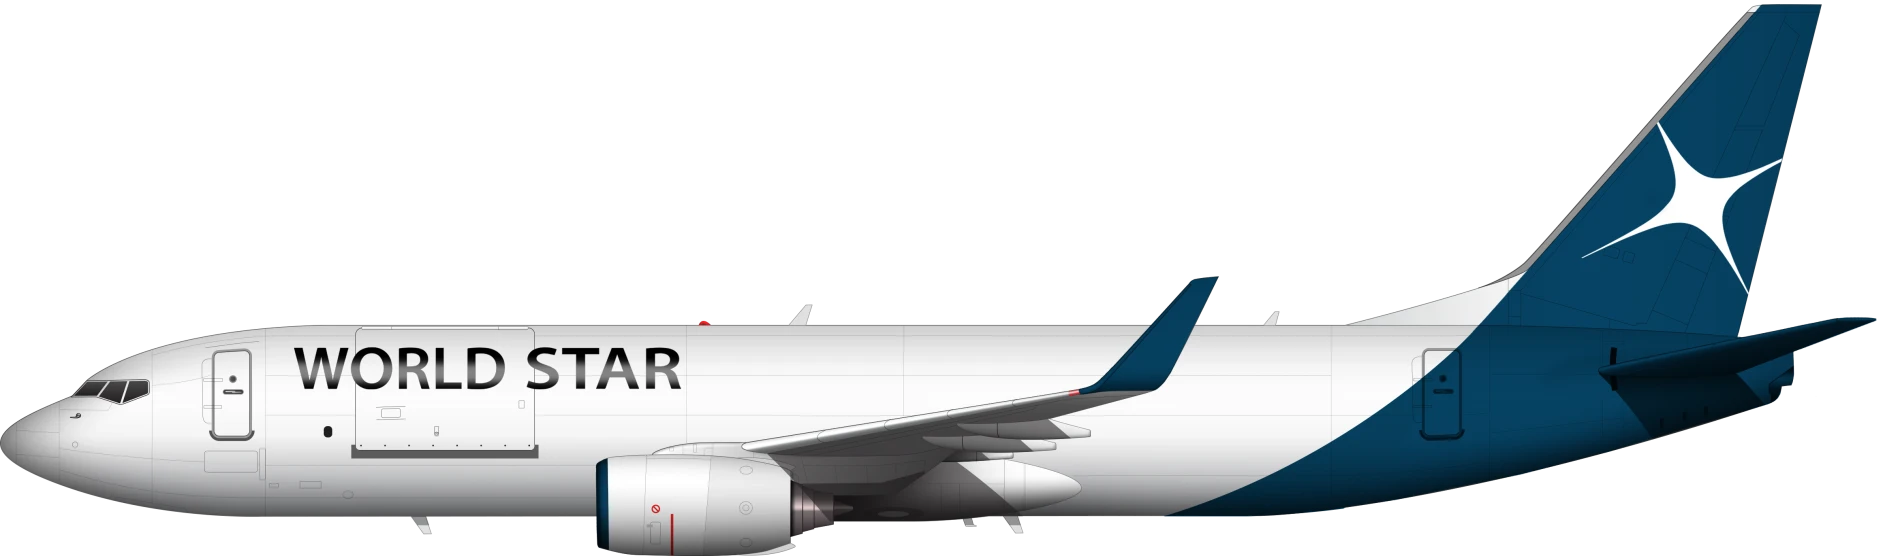 737-800F